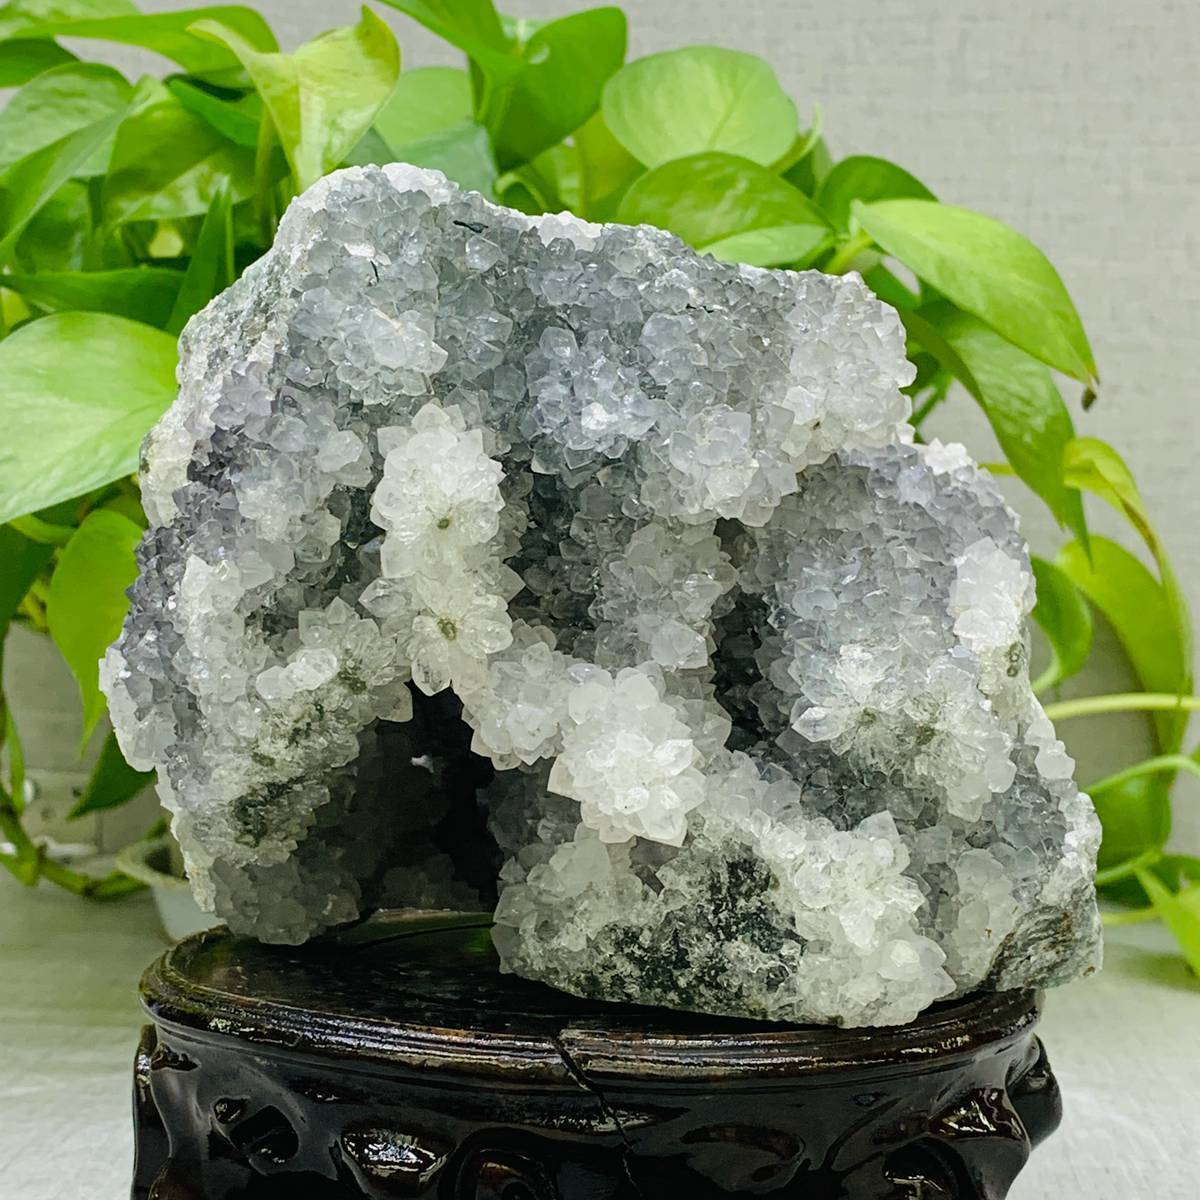 1970g Natural Amethyst Geode Mineral Specimen Crystal Quartz Energy Decoration